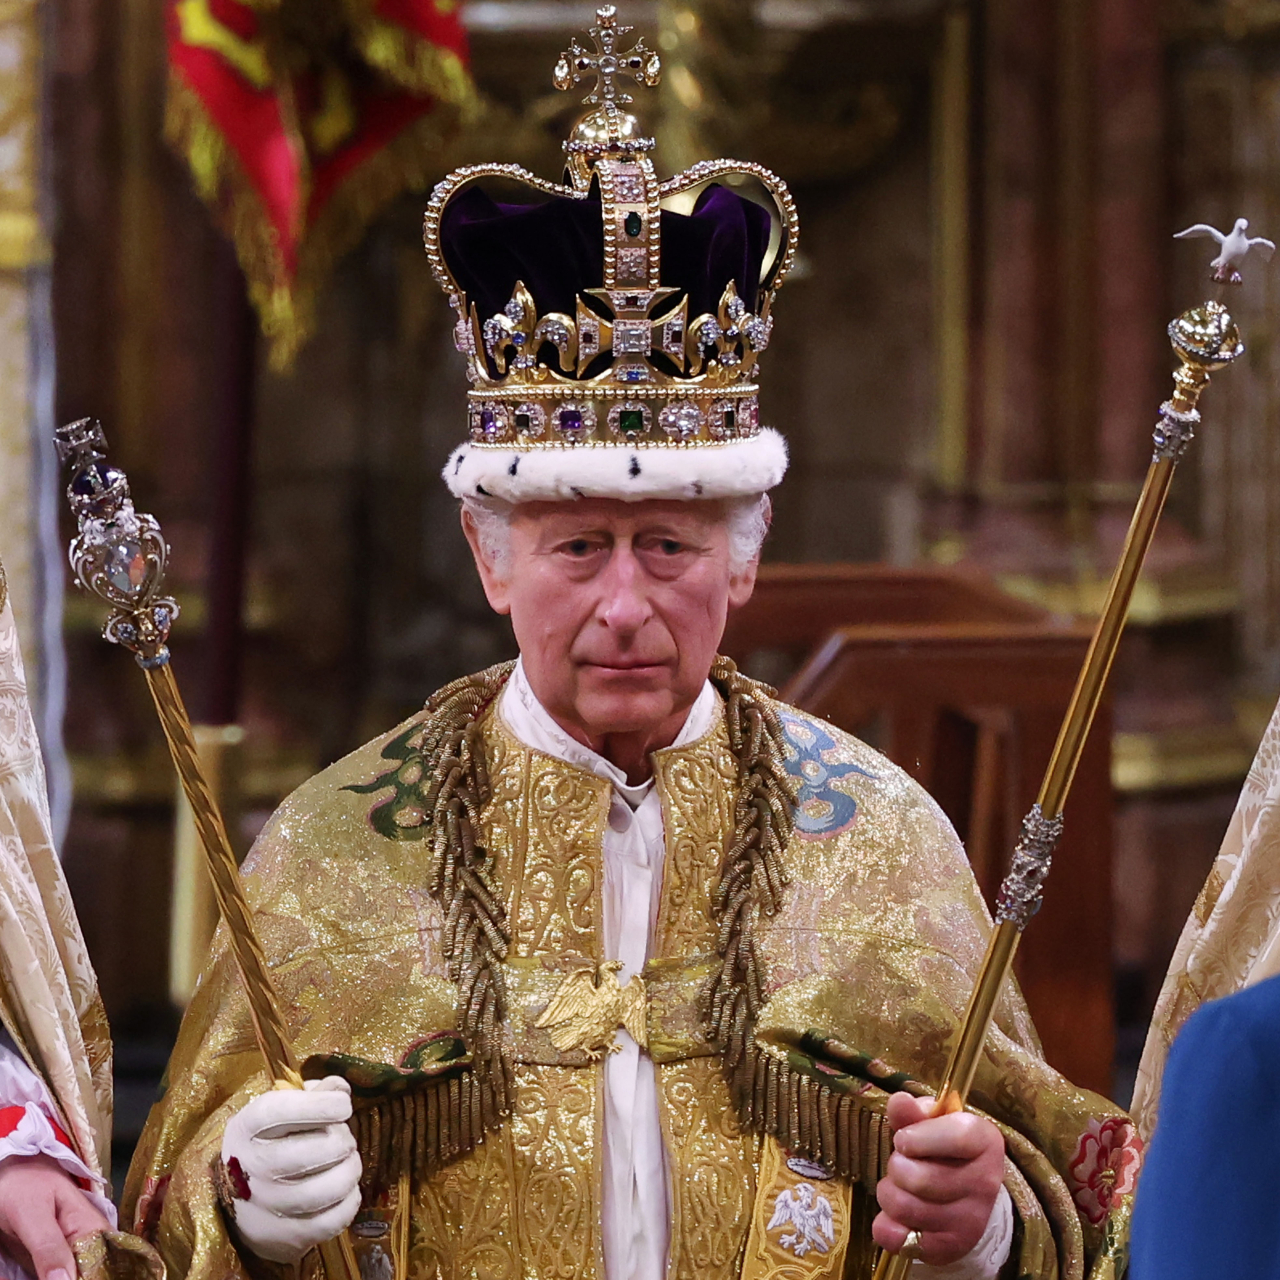 Charles III coroado rei do Reino Unido